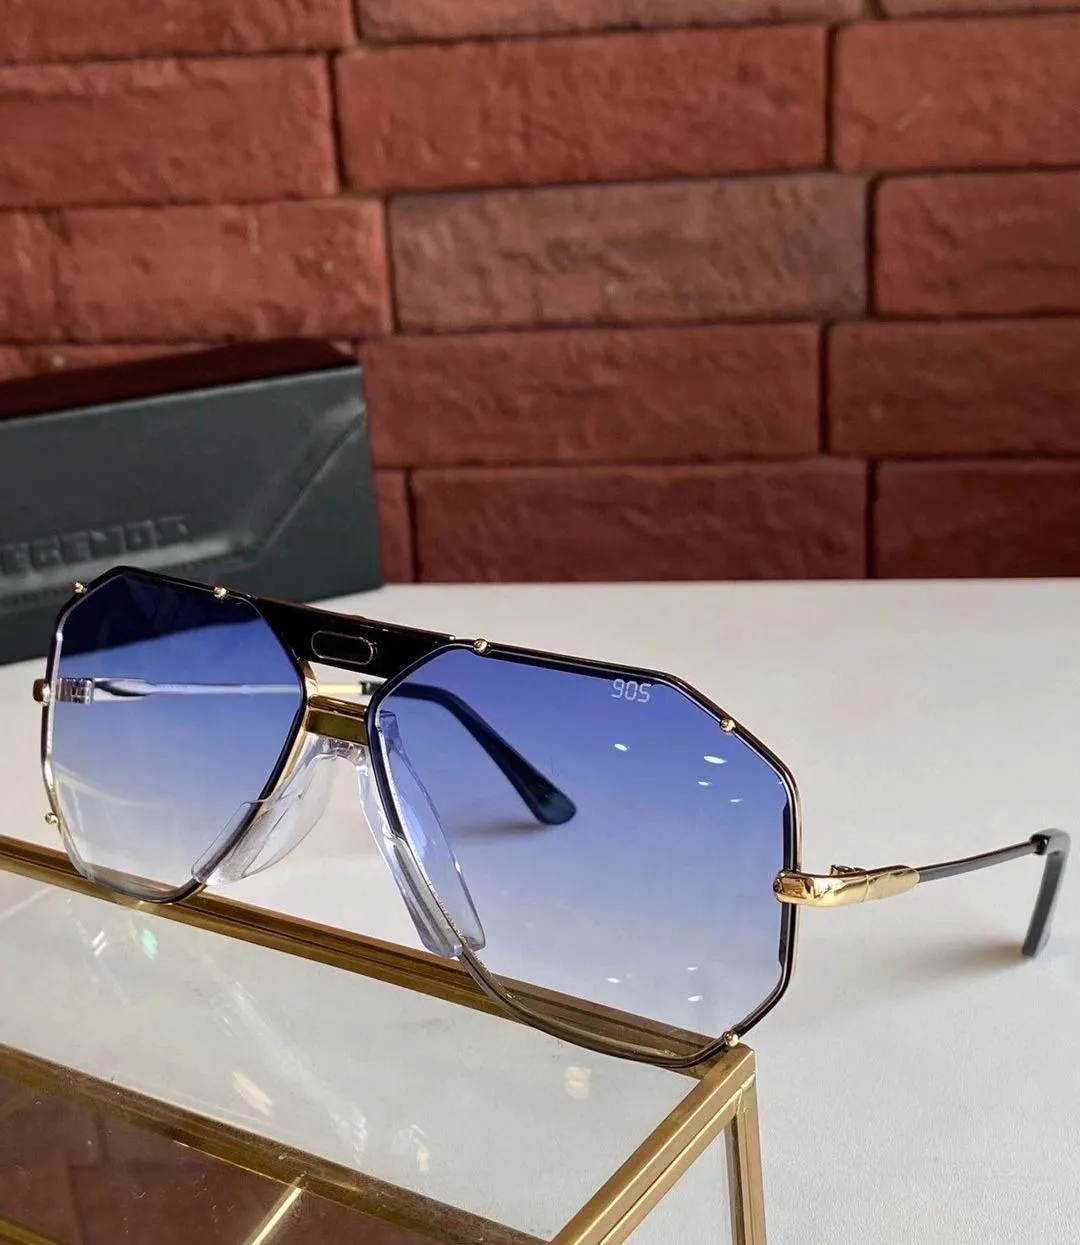 خمر 905 النظارات الشمسية الذهب الأبيض الإطار الأزرق التدرج عدسة للجنسين نظارات الشمس ظلال UV400 حماية مع مربع